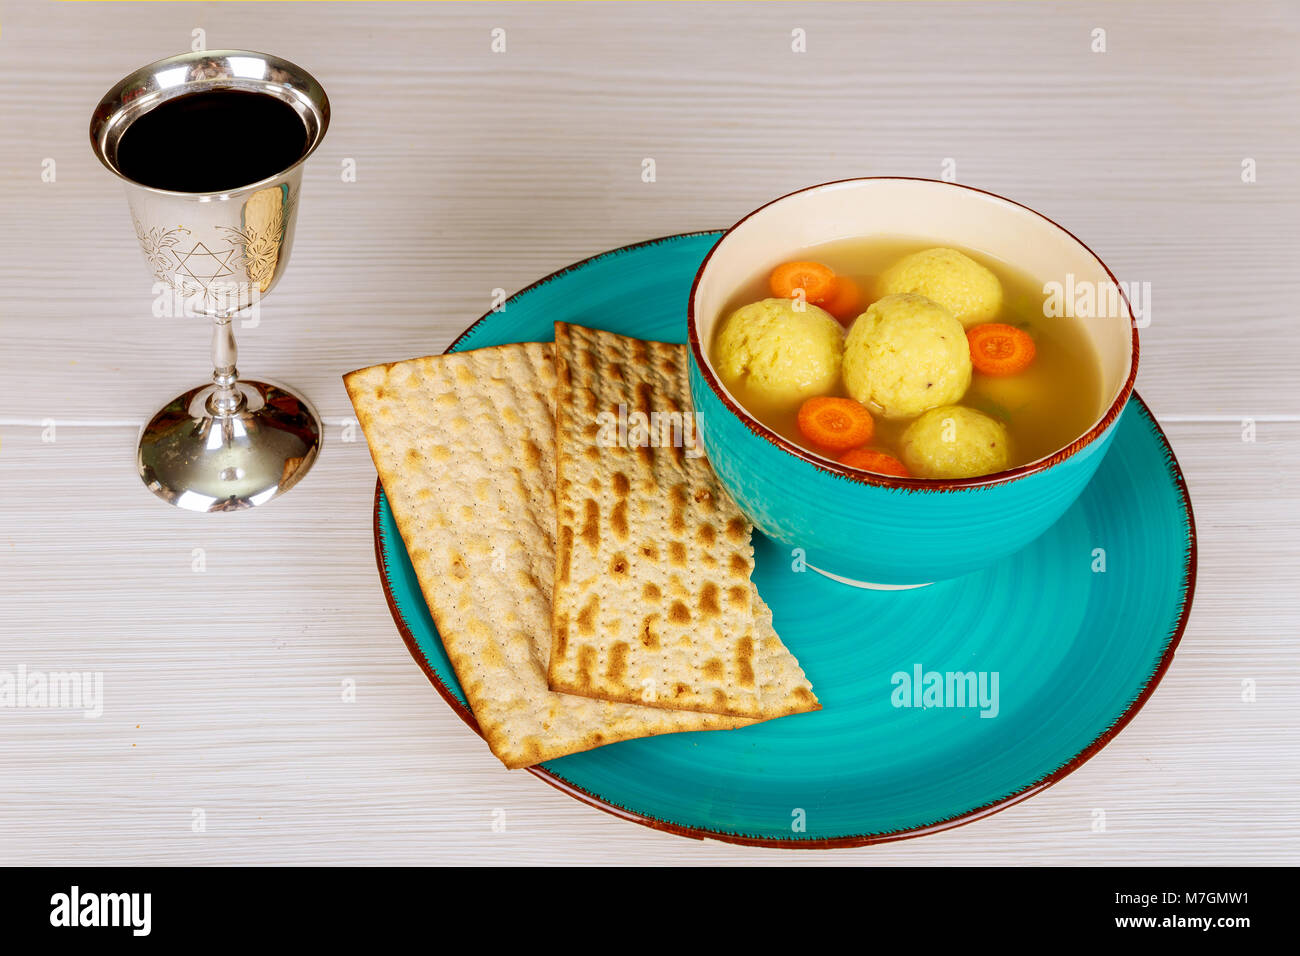 Délicieux potage à la boule Matzoh Matza, symboles pour la Pâque juive Pessah holiday Banque D'Images